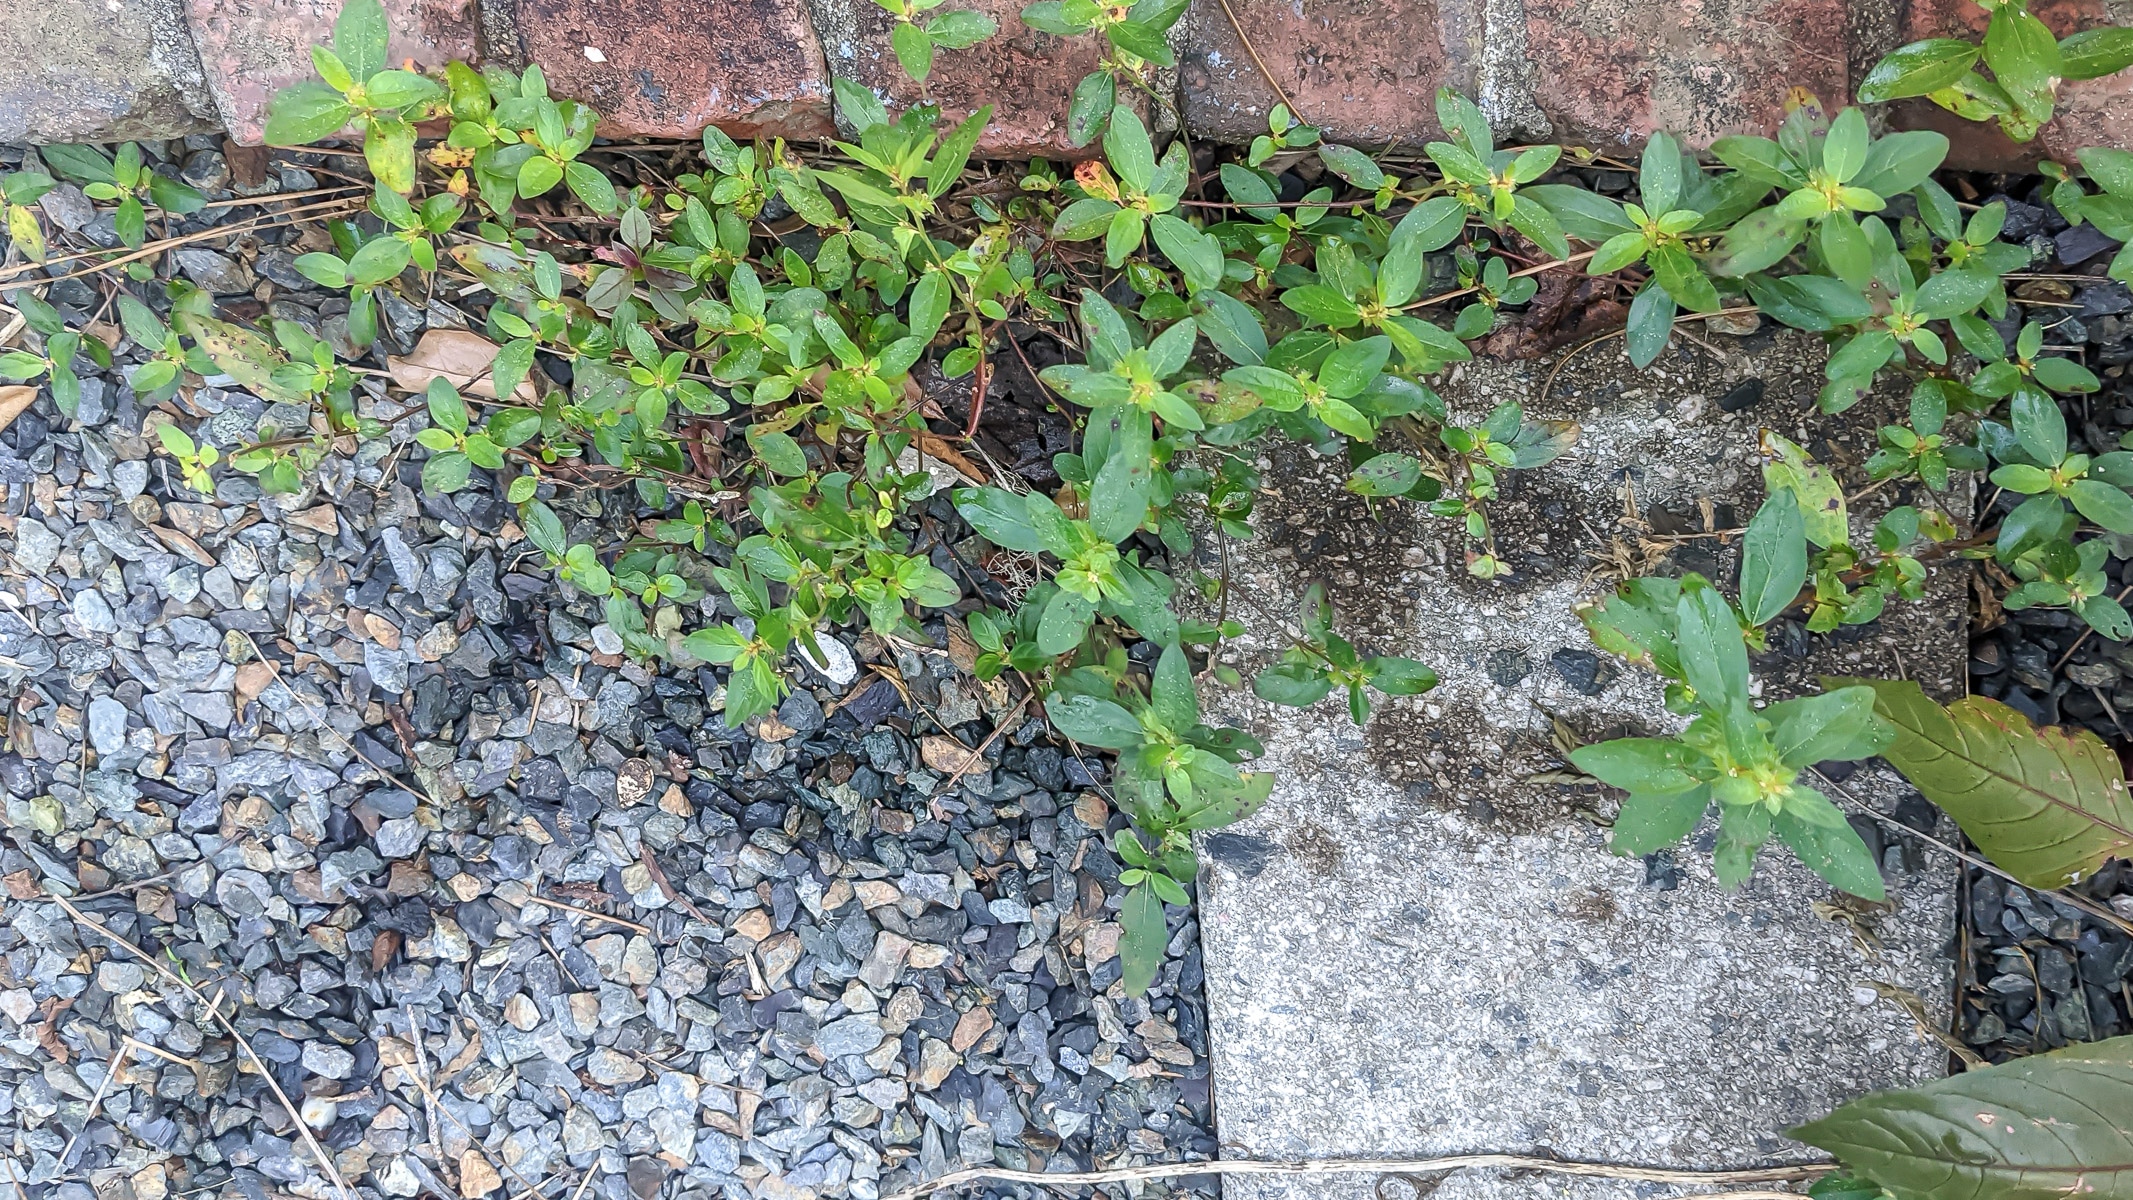 Weeds between bricks and gravel.